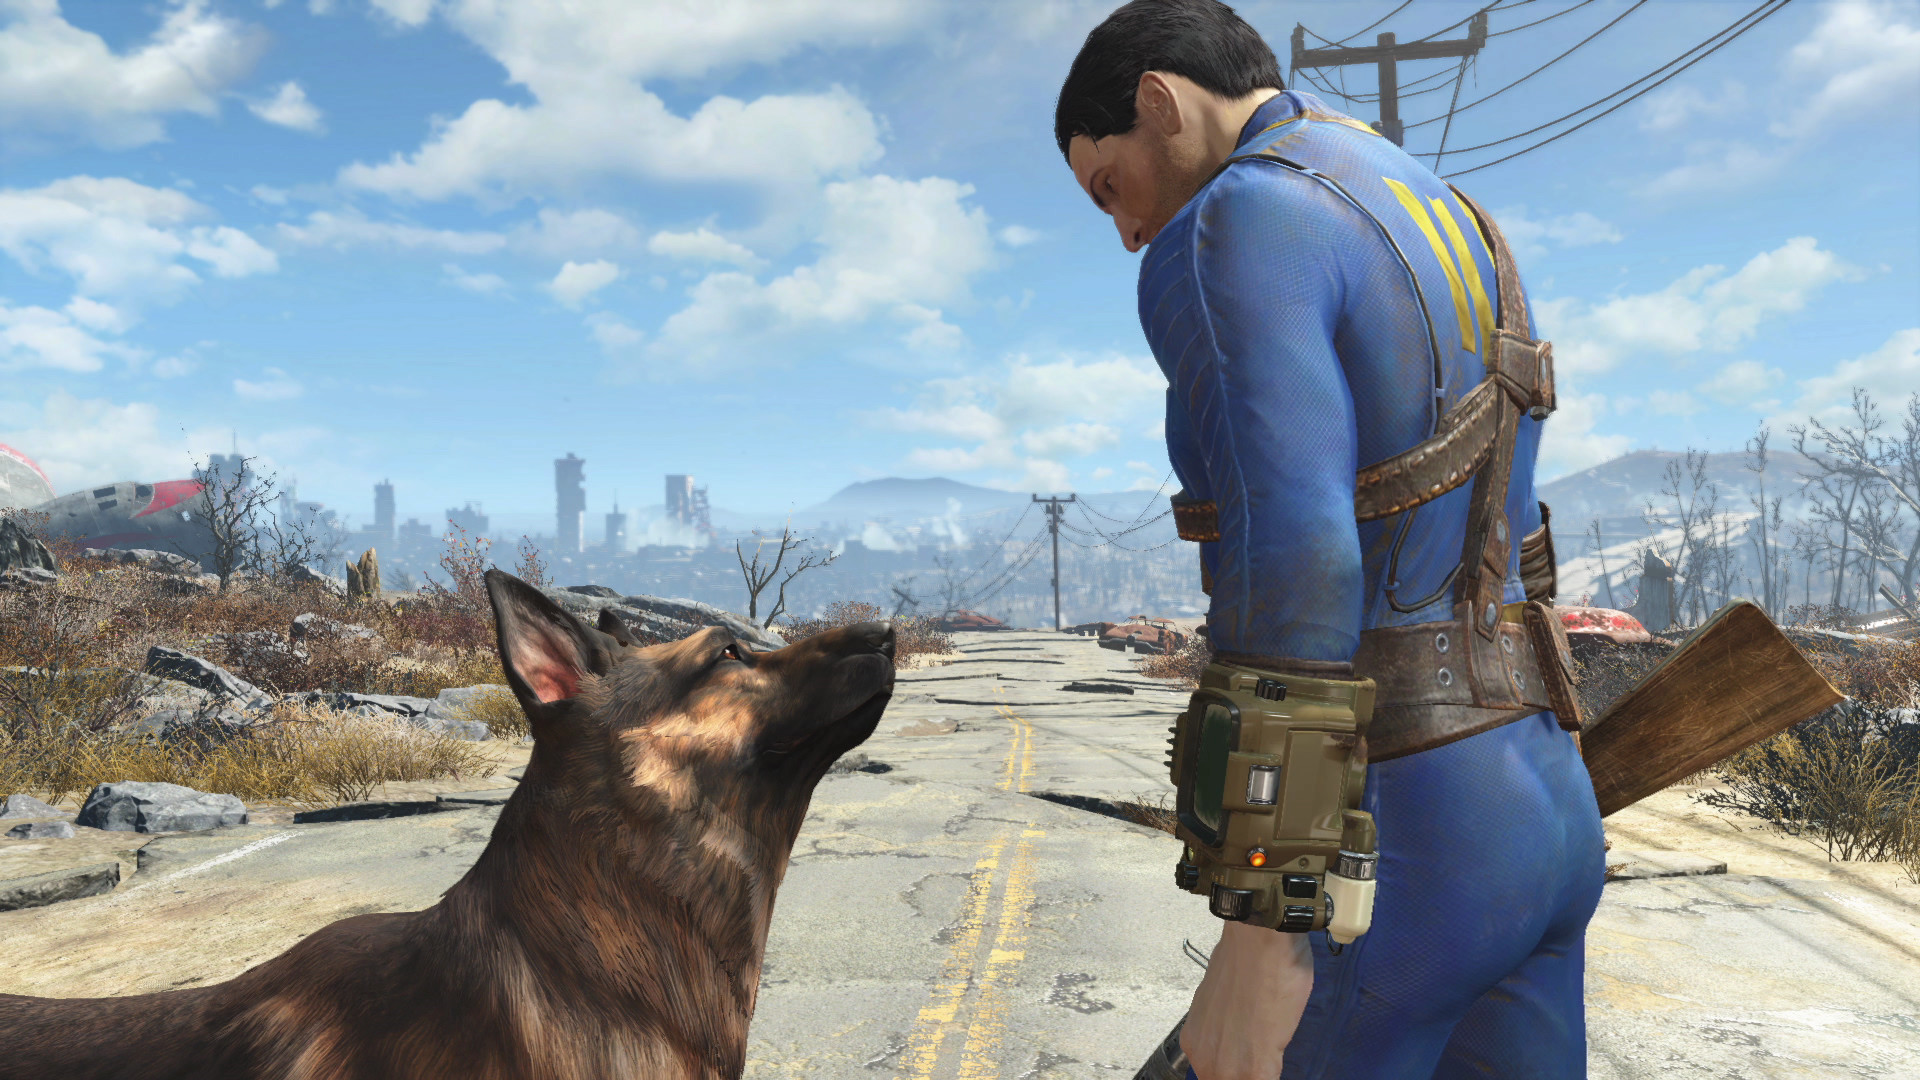 Pourquoi s’inquiéter de l’absence d’un nouveau jeu Fallout malgré le battage médiatique autour de la série TV ?